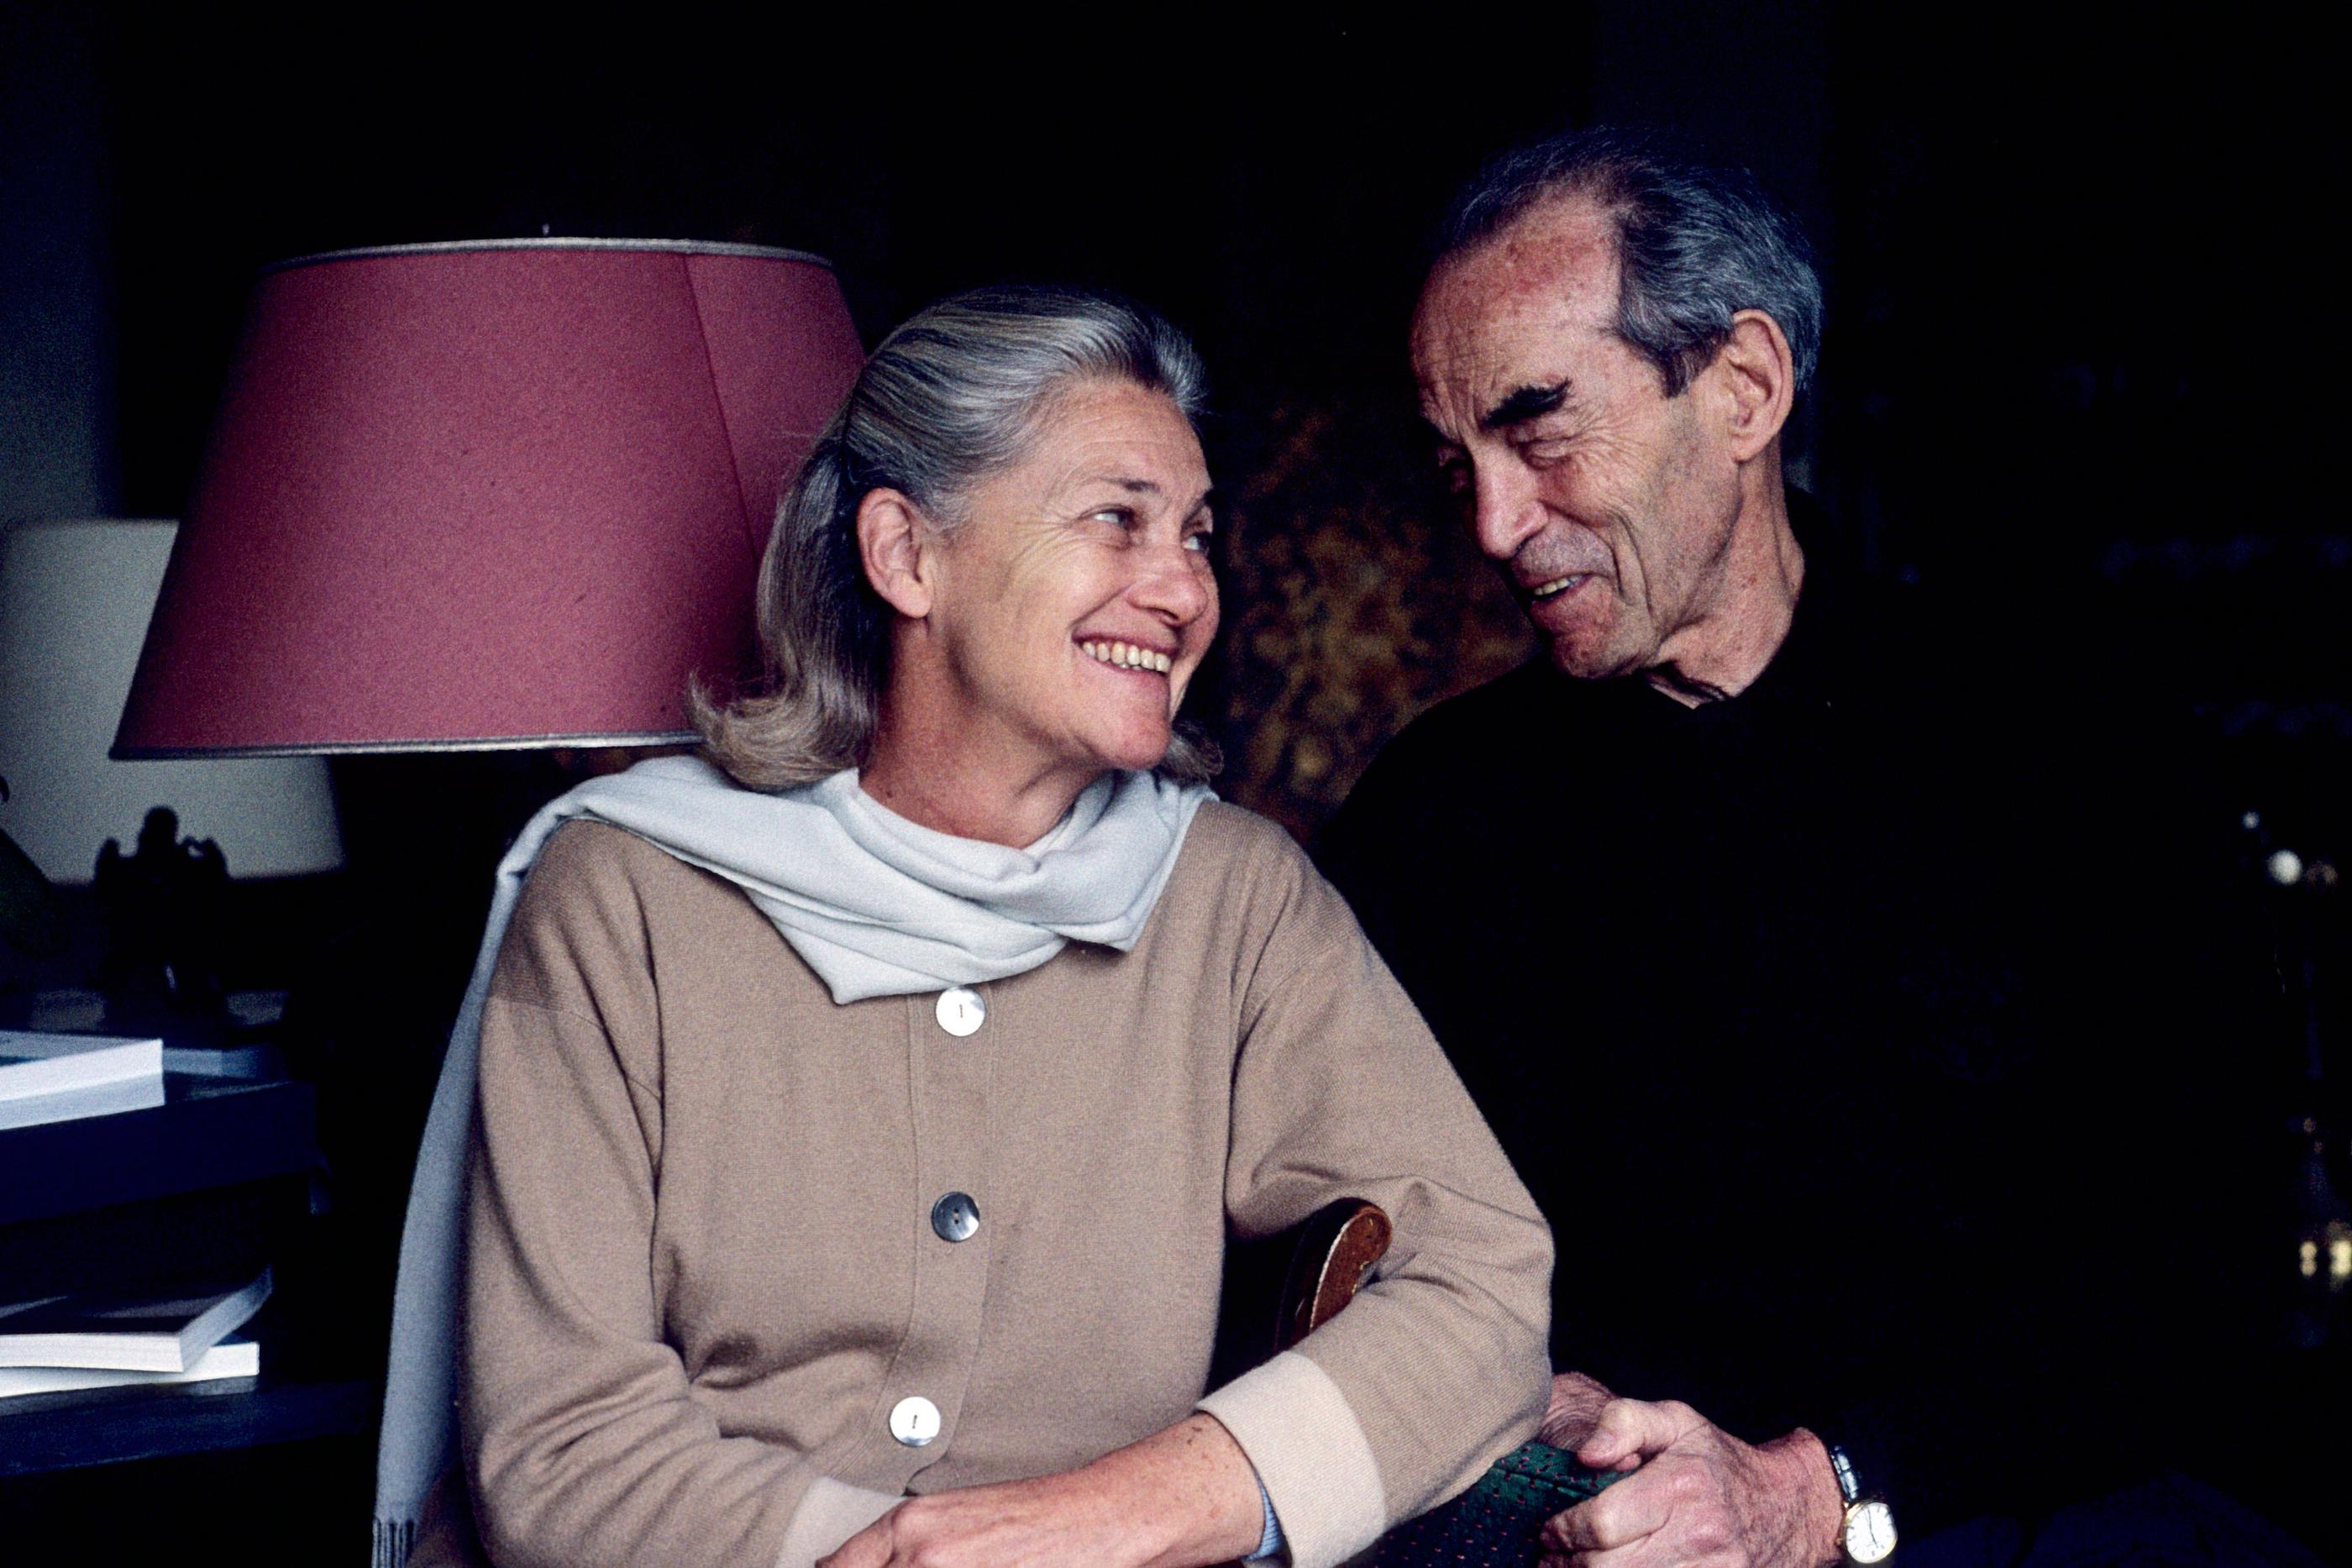 La philosophe Élisabeth Badinter et son époux (ici en 2005) s'étaient mariés en 1966. Hélène Bamberger/opale.photo